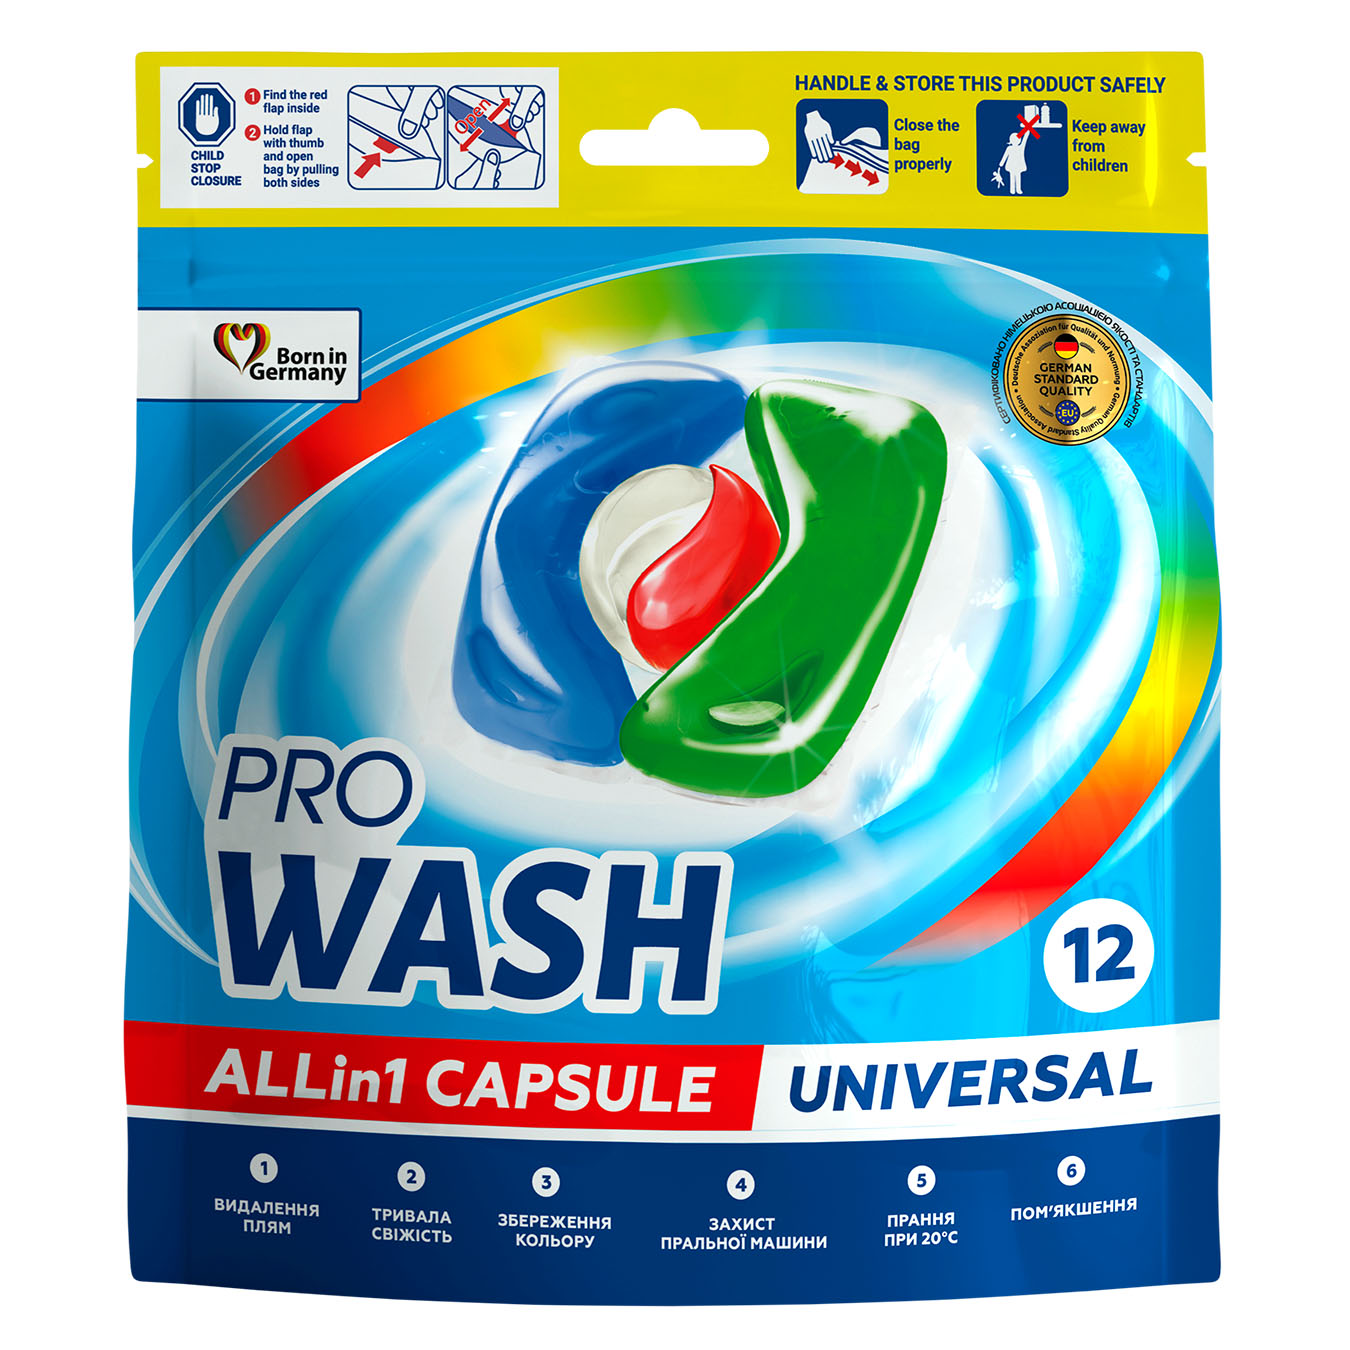 Pro Wash capsules for washing 12pcs